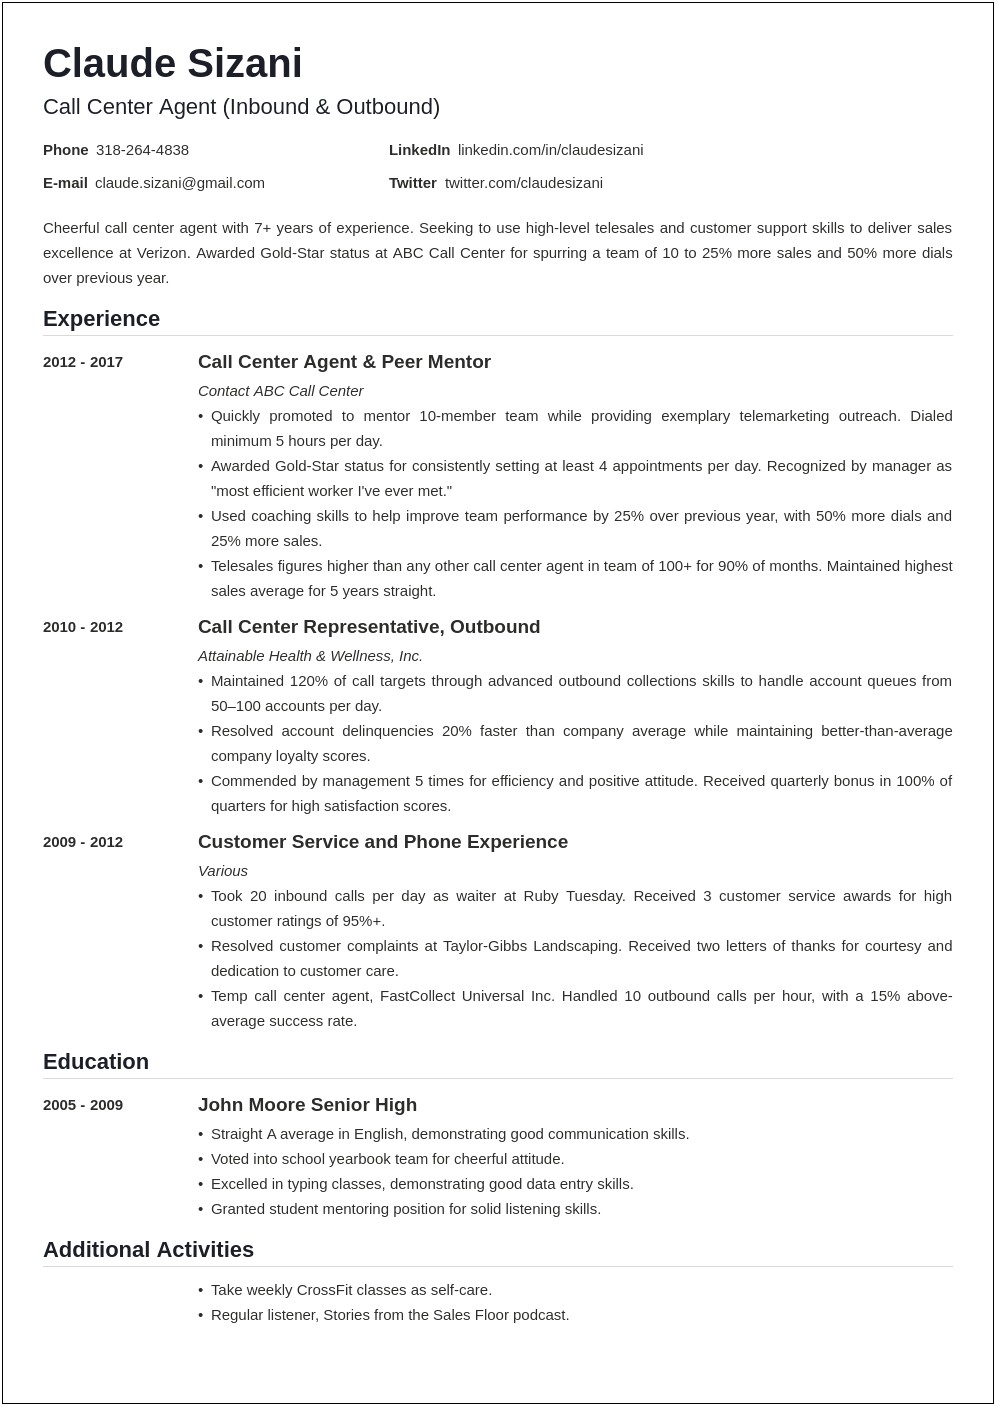 Sample Resume Format For Call Center Job